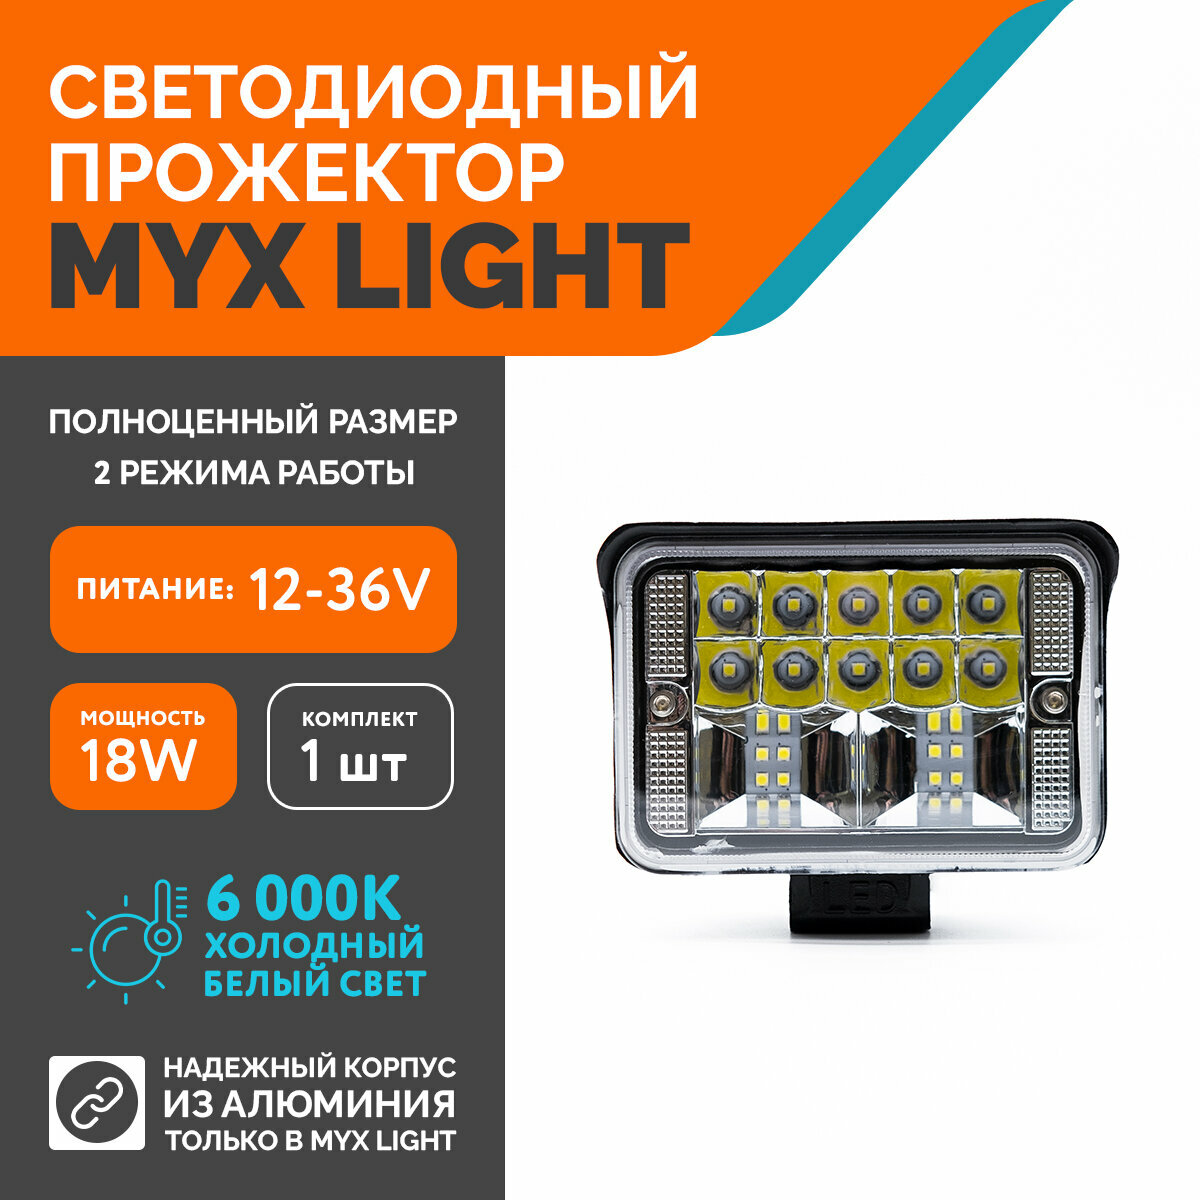 Светодиодная противотуманная фара для авто MYX-Light 12-36V мощность 18W 6000K прожектор, дневные ходовые огни для легковых и грузовых авто, джипов, квадроциклов 1шт